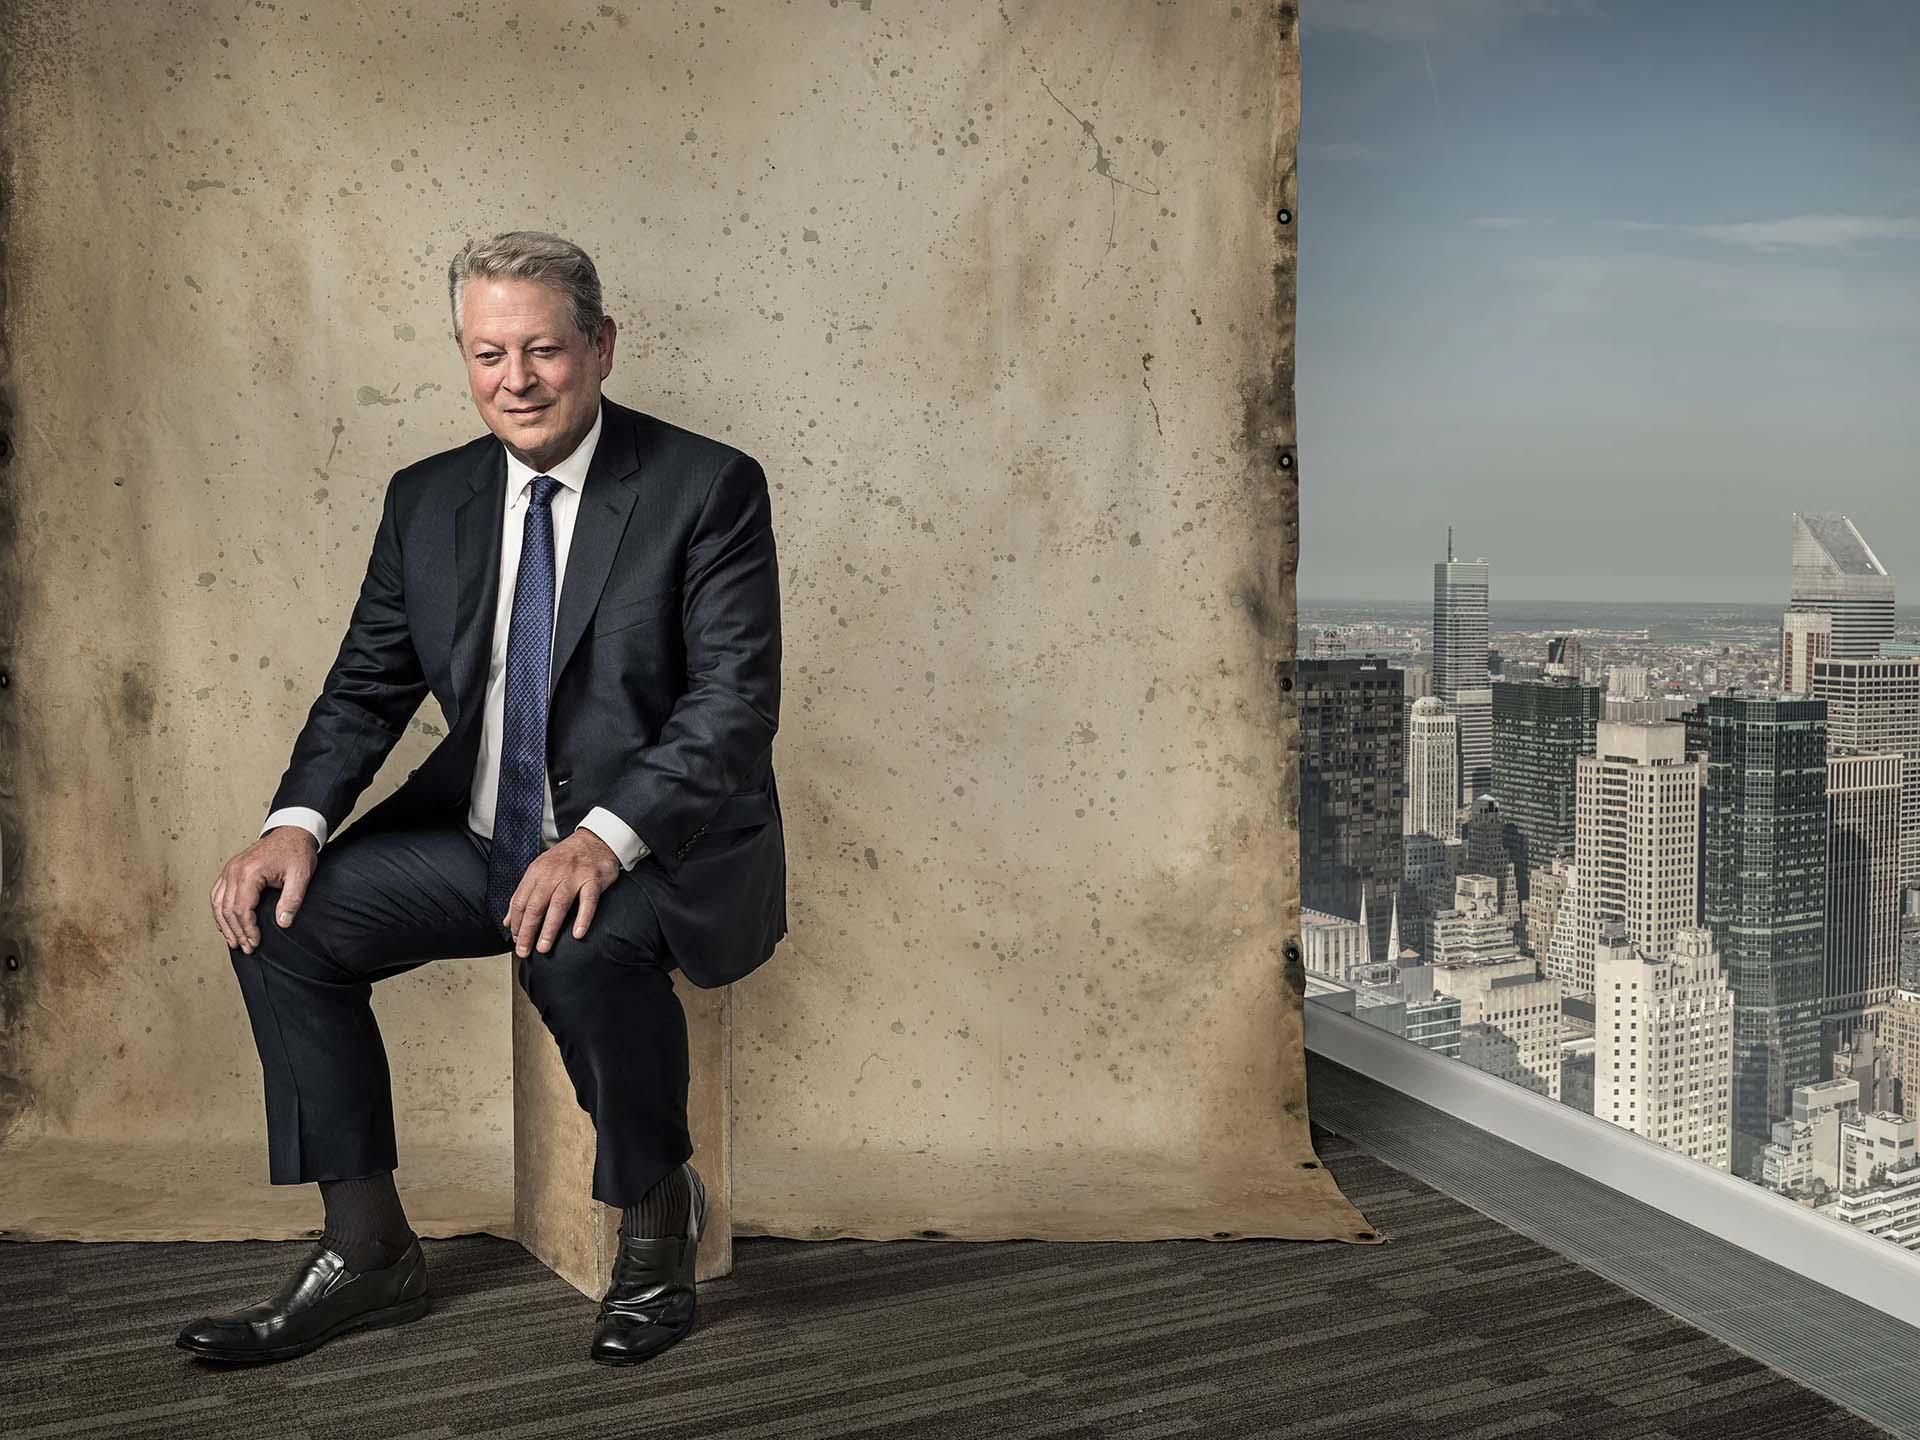 ال گور، سیاستمدار و فعال محیط زیست در مستند An Inconvenient Truth